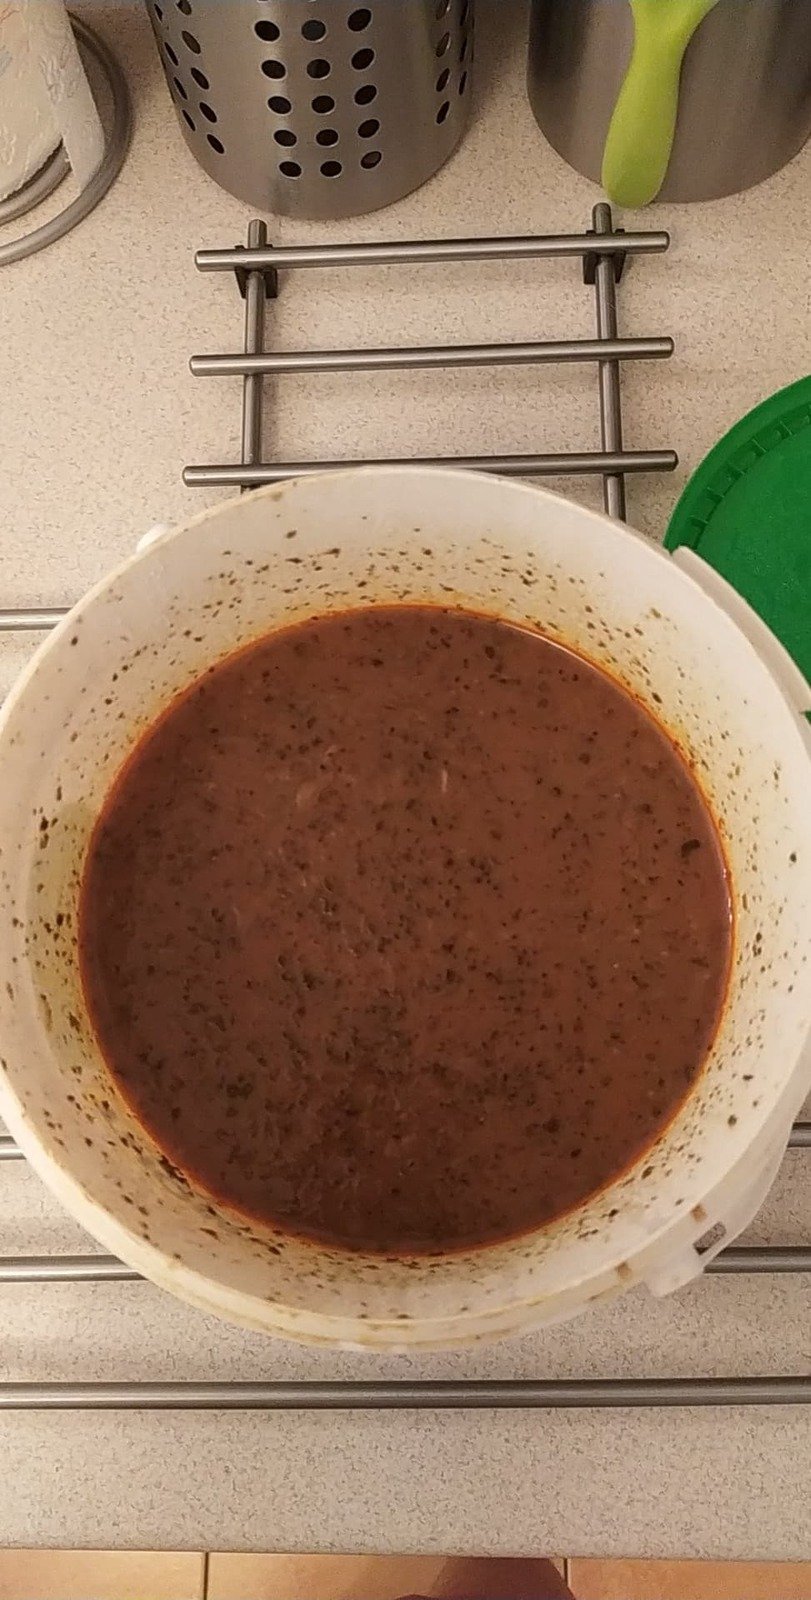 Z kotrče si rodina udělala dršťkovou polévku.